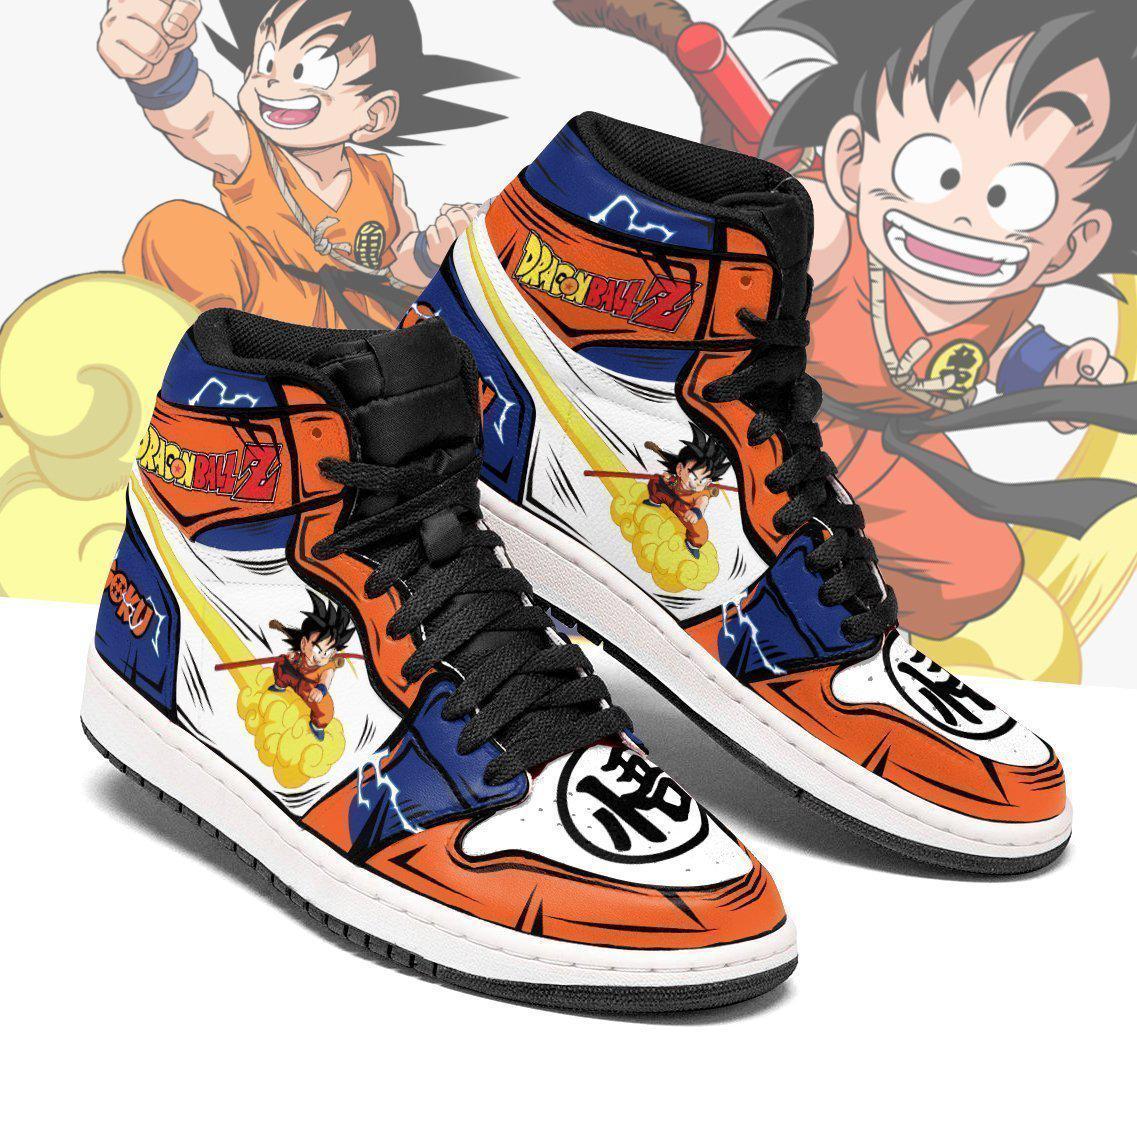 goku chico shoes boots dragon ball z anime jordan sneakers fan gift mn04 gearanime - DBZ Shop